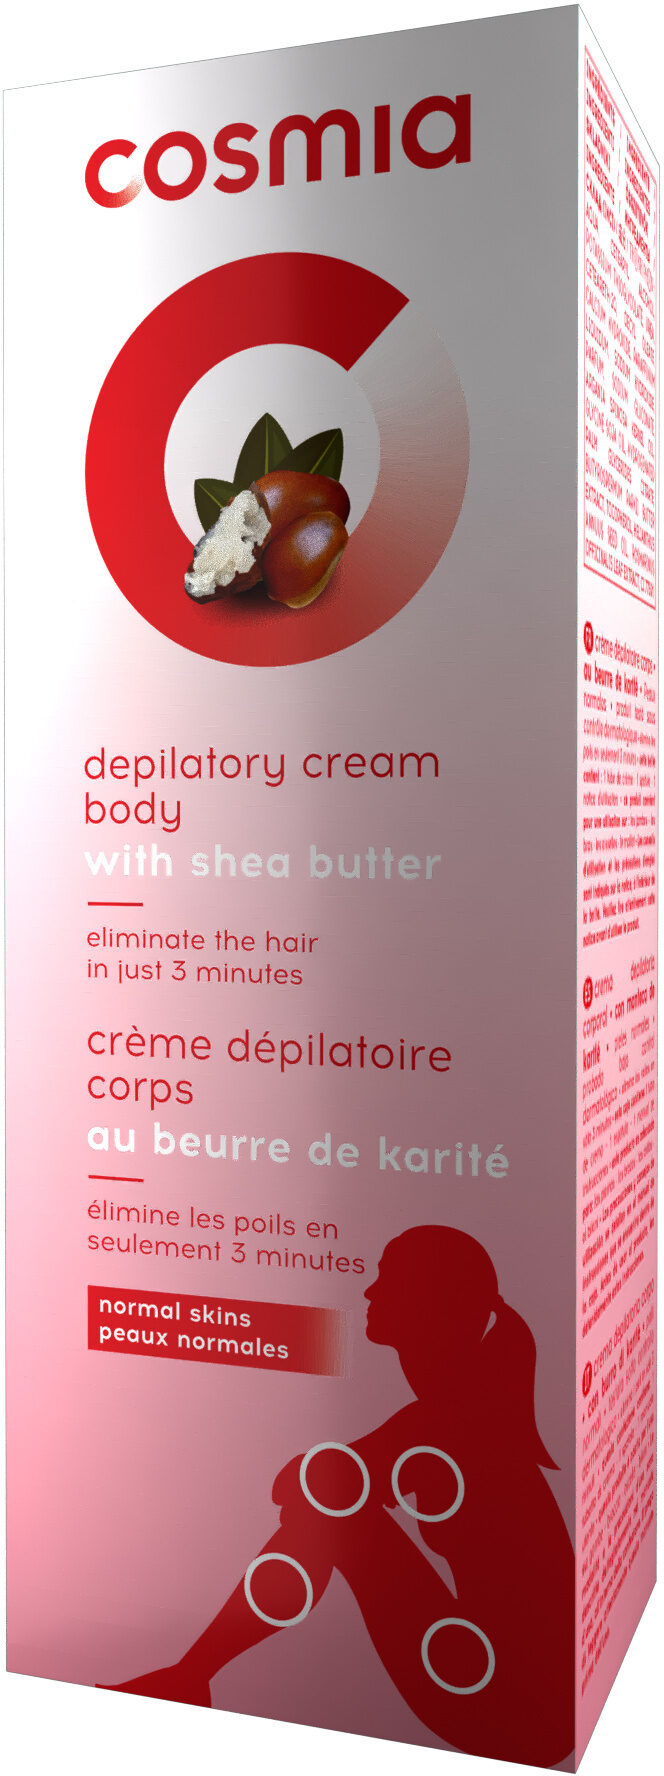 Crème dépilatoire corps au beurre de karité - Produto - fr